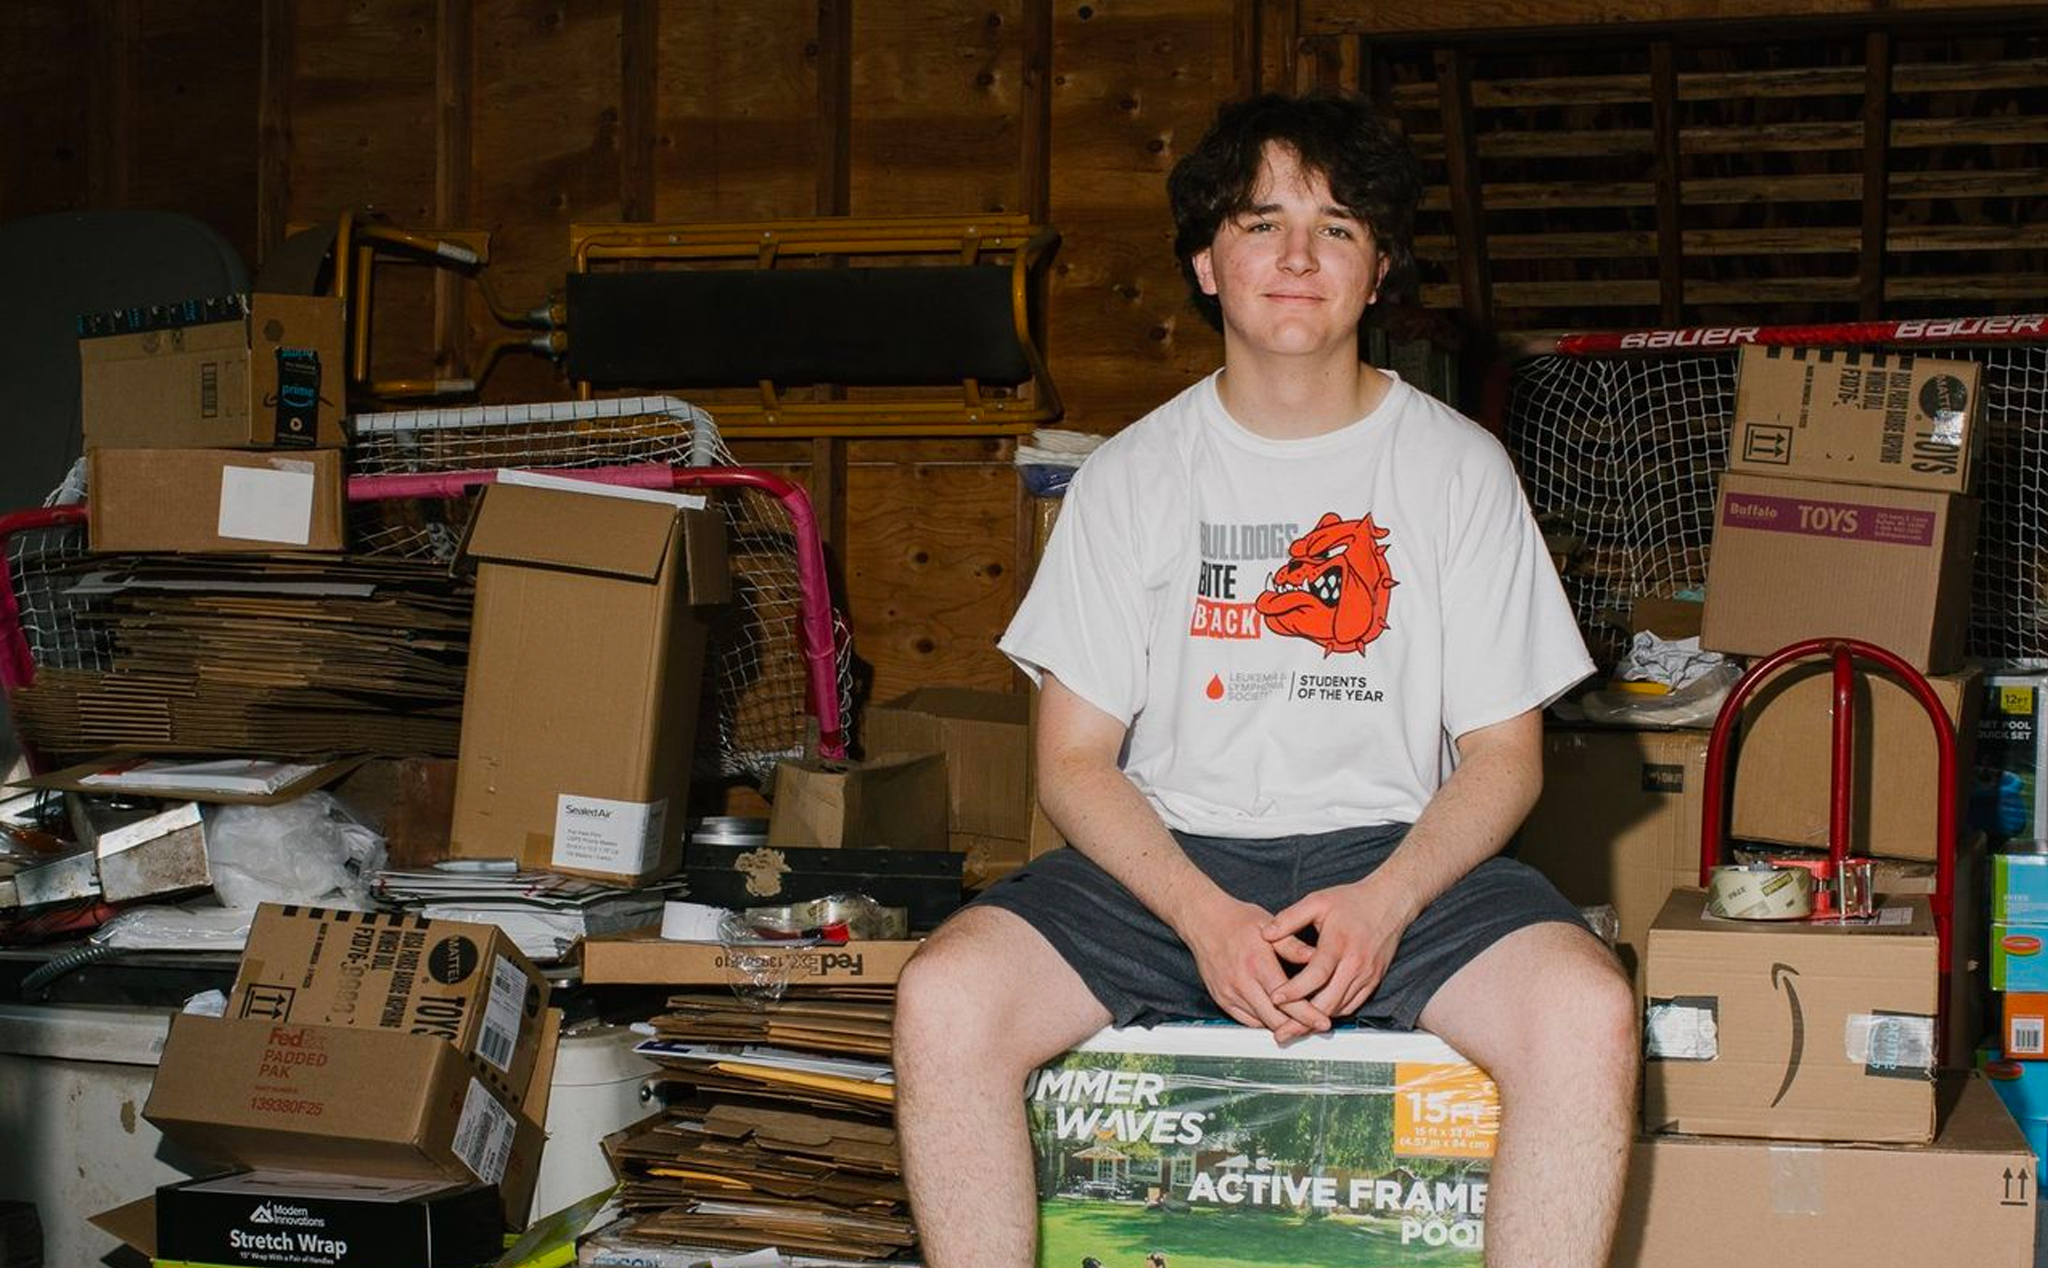 16 tuổi chàng trai này đã bán được triệu đô từ việc kinh doanh online